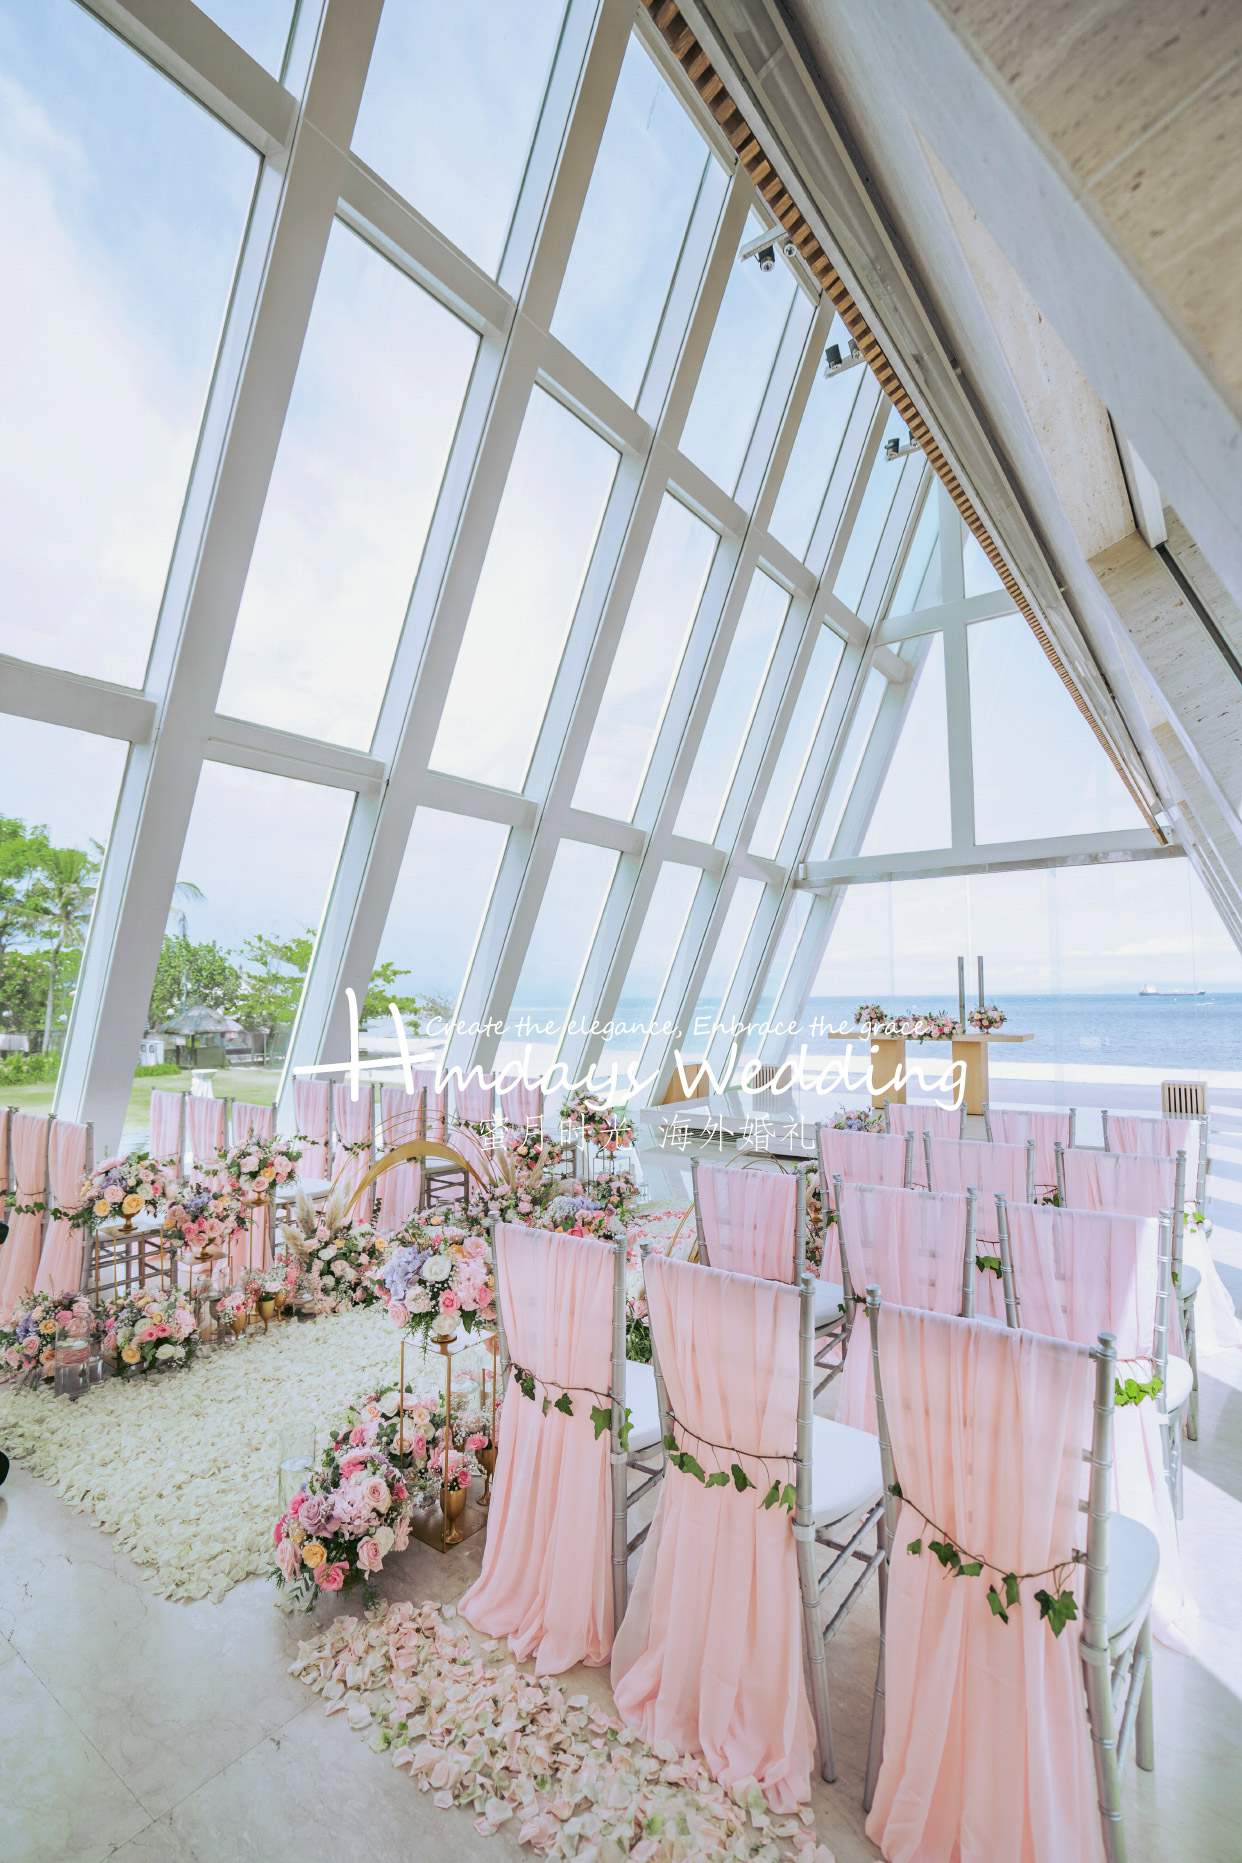 海外婚礼|巴厘岛高端婚礼布置|无限教堂婚礼布置|海外婚礼定制中高端布置案例|巴厘岛婚礼布置定制案例